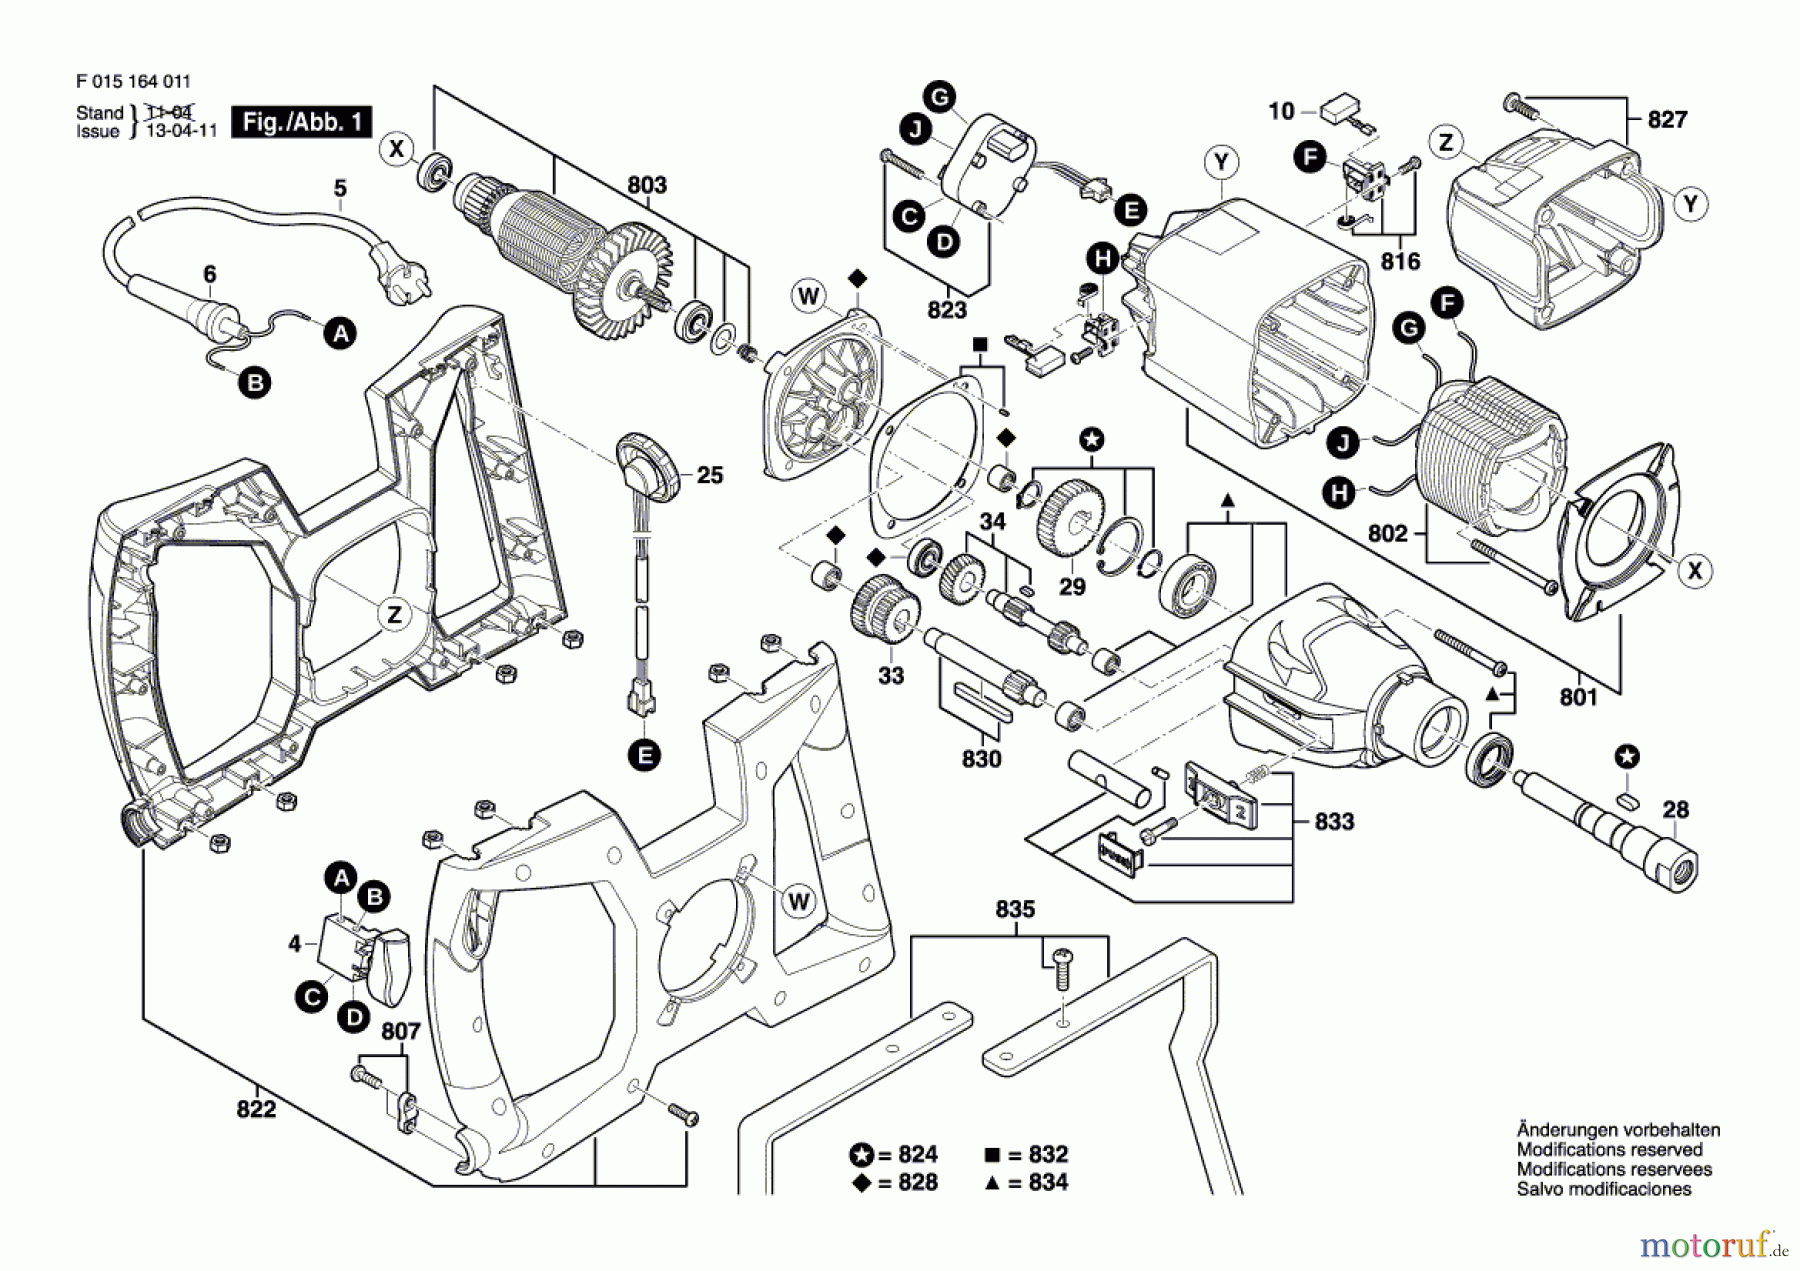  Bosch Werkzeug Rührwerk 1640 Seite 1